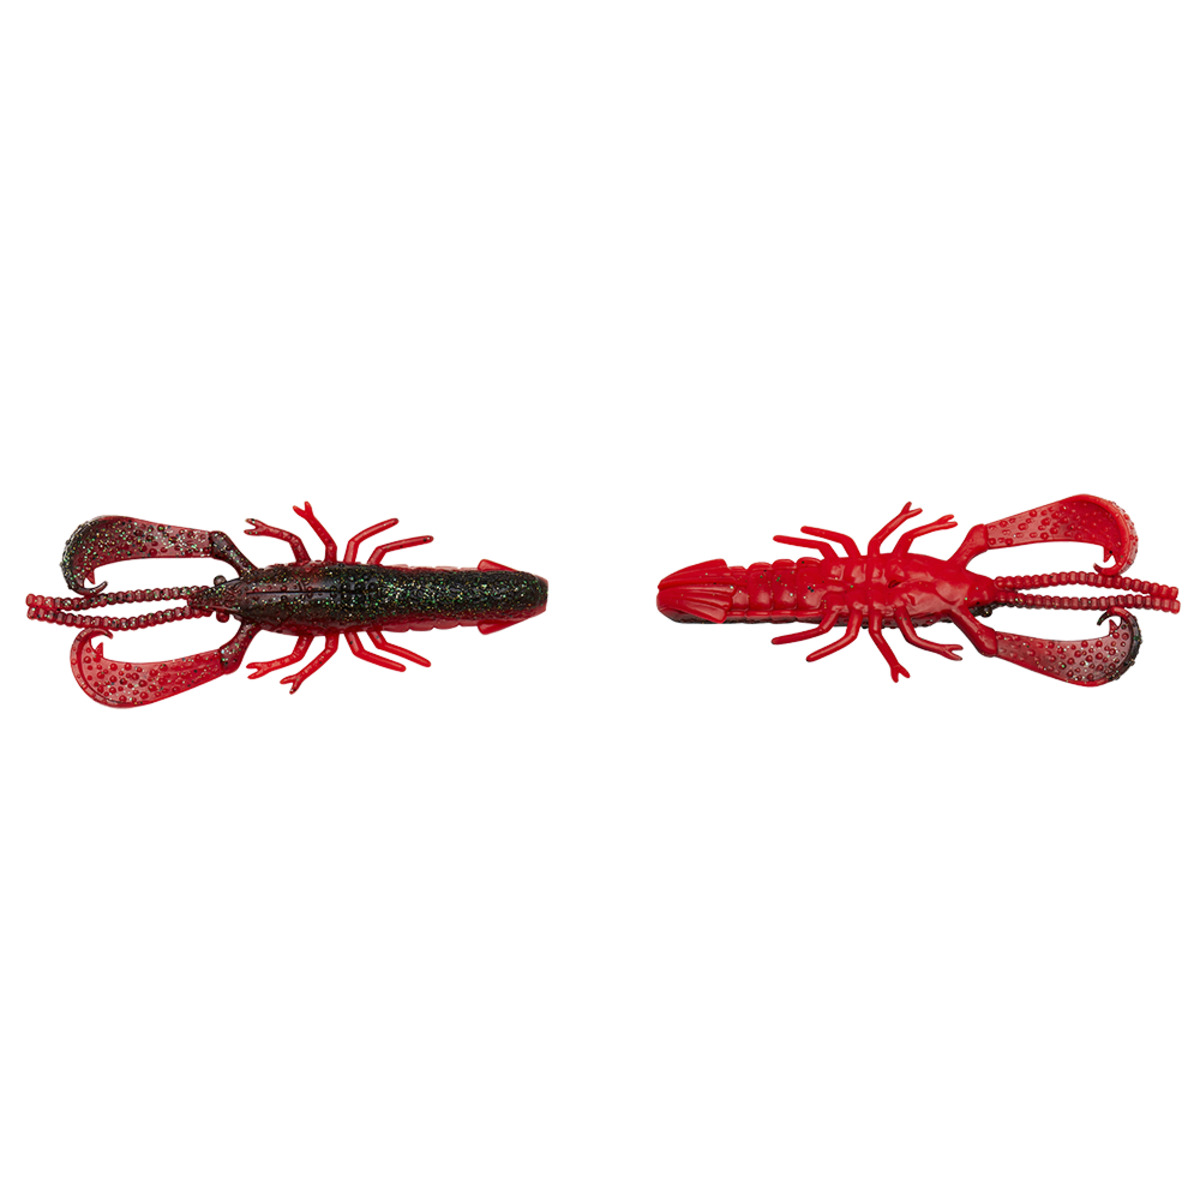 Savage Gear Reaction Crayfish 9.1cm 7.5g - RED N BLACK